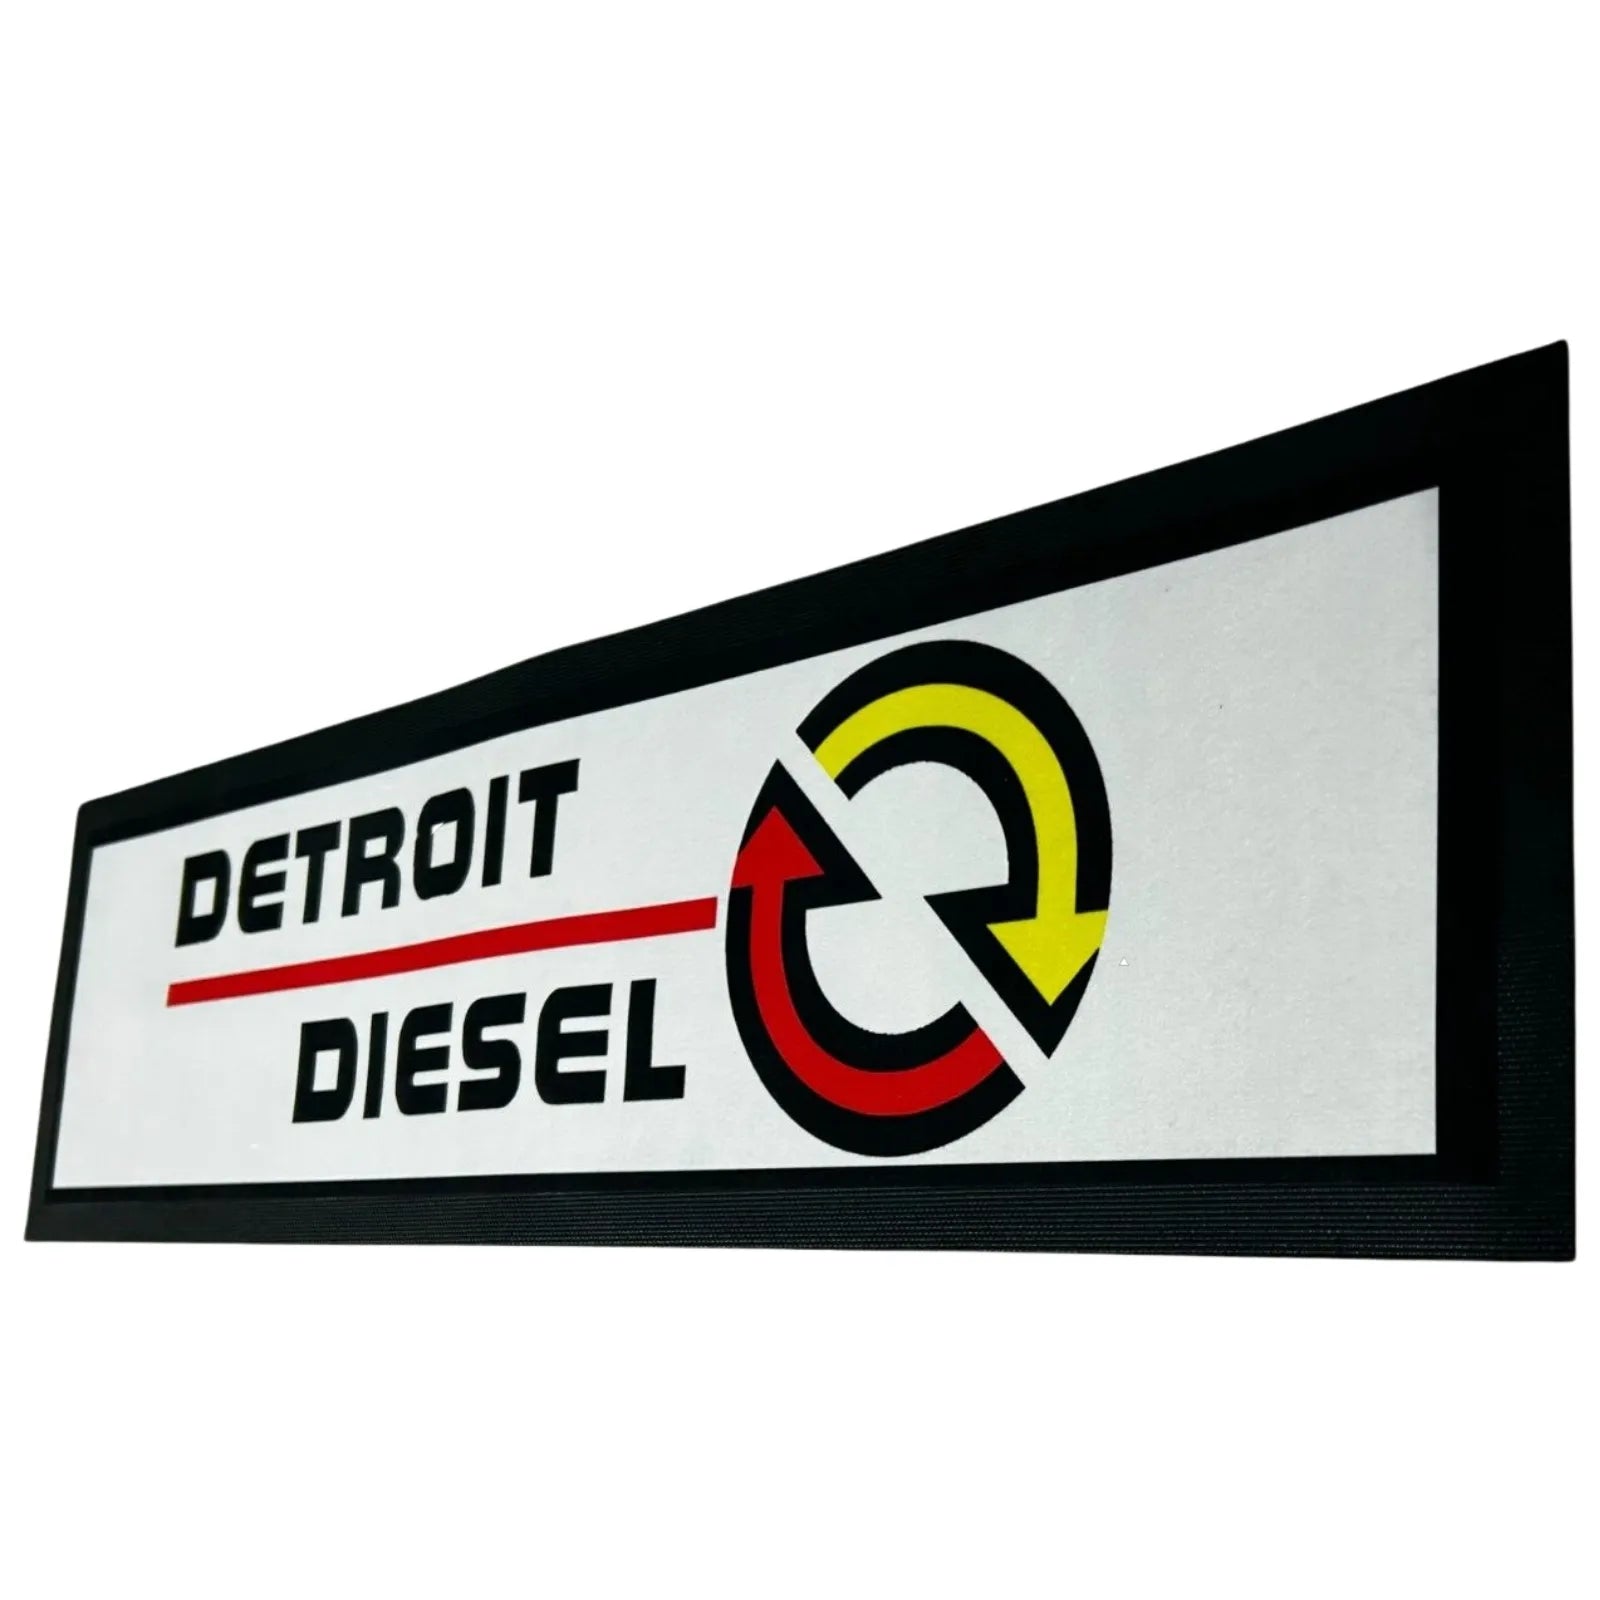 Detroit Diesel Premium Rubber-Backed Bar Mat Runner - KING CAVE